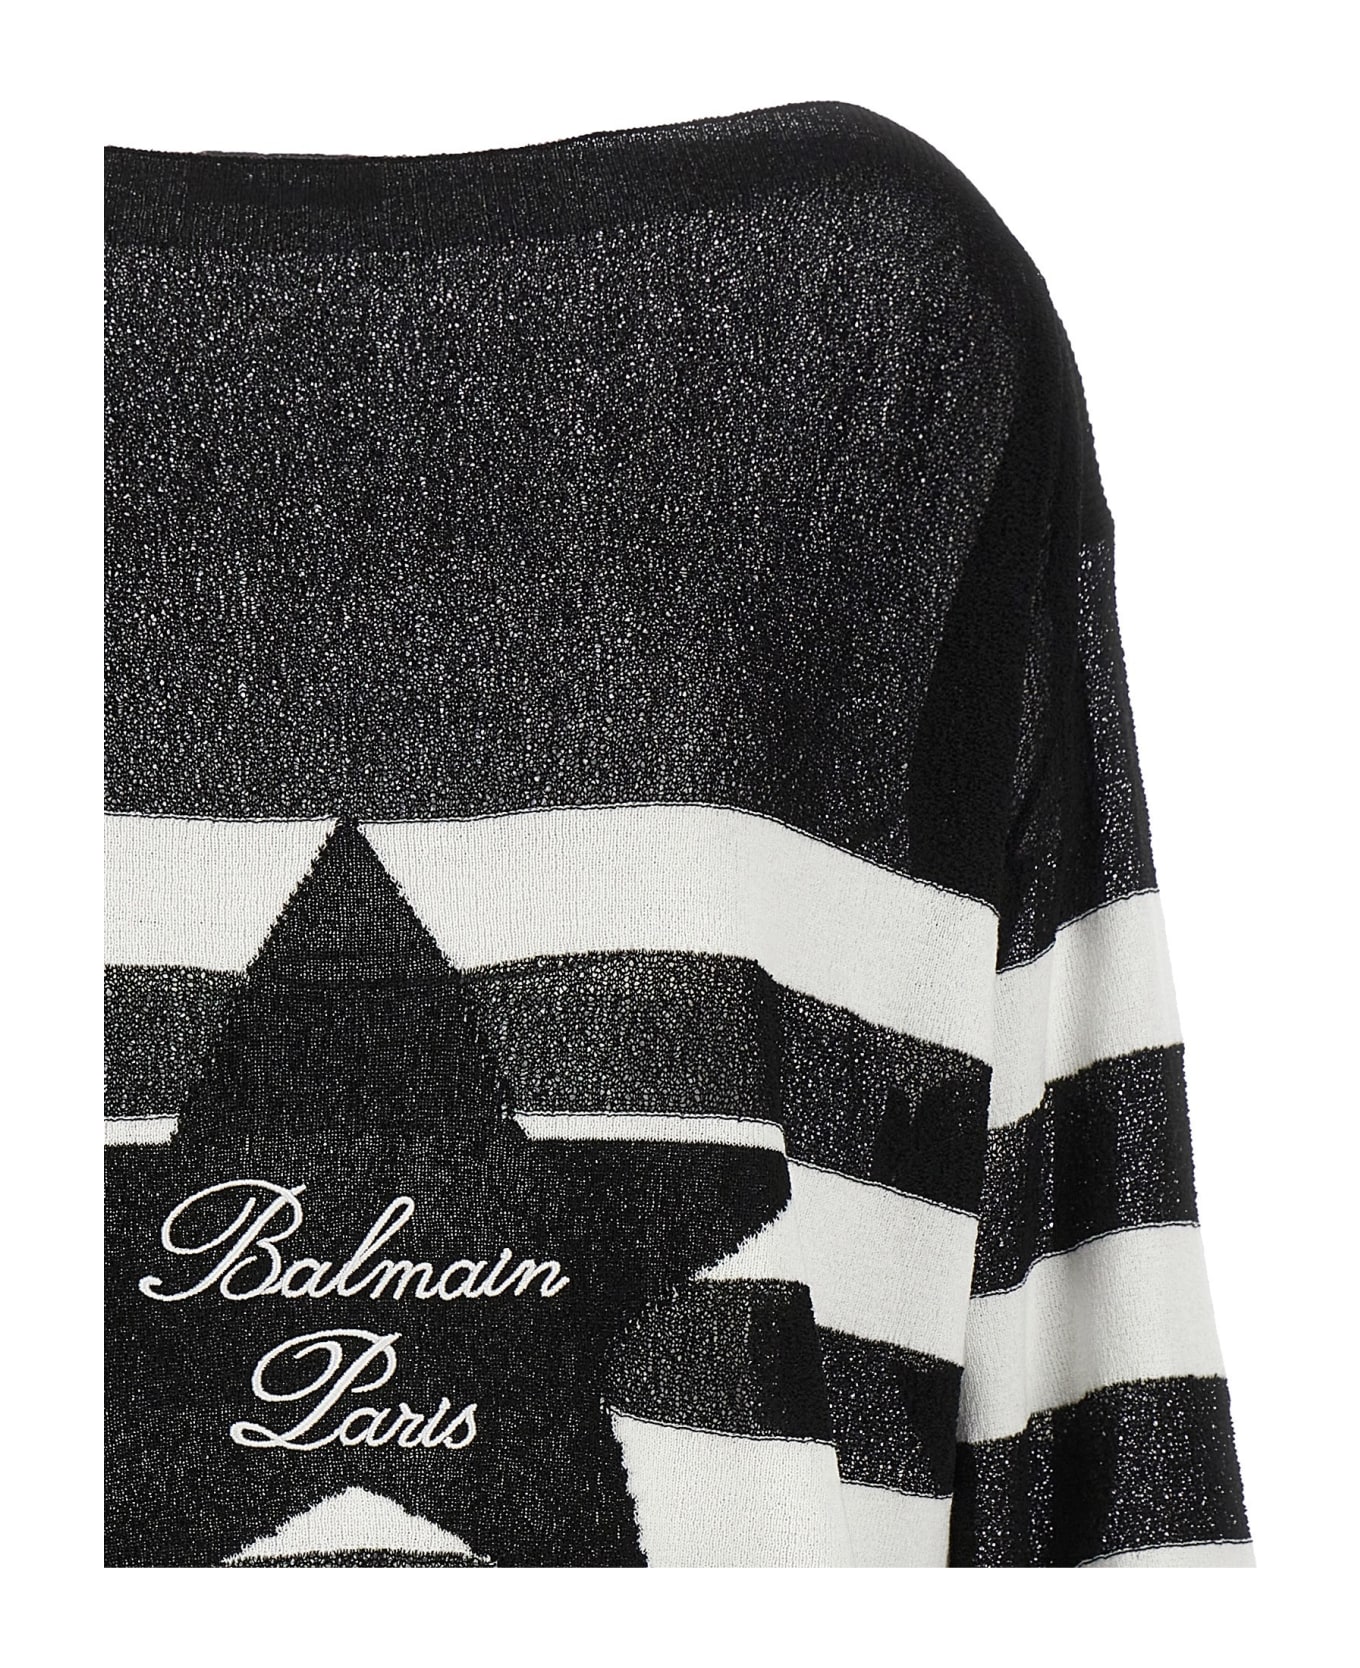 Balmain Logo Embroidery Striped Sweater - White/Black